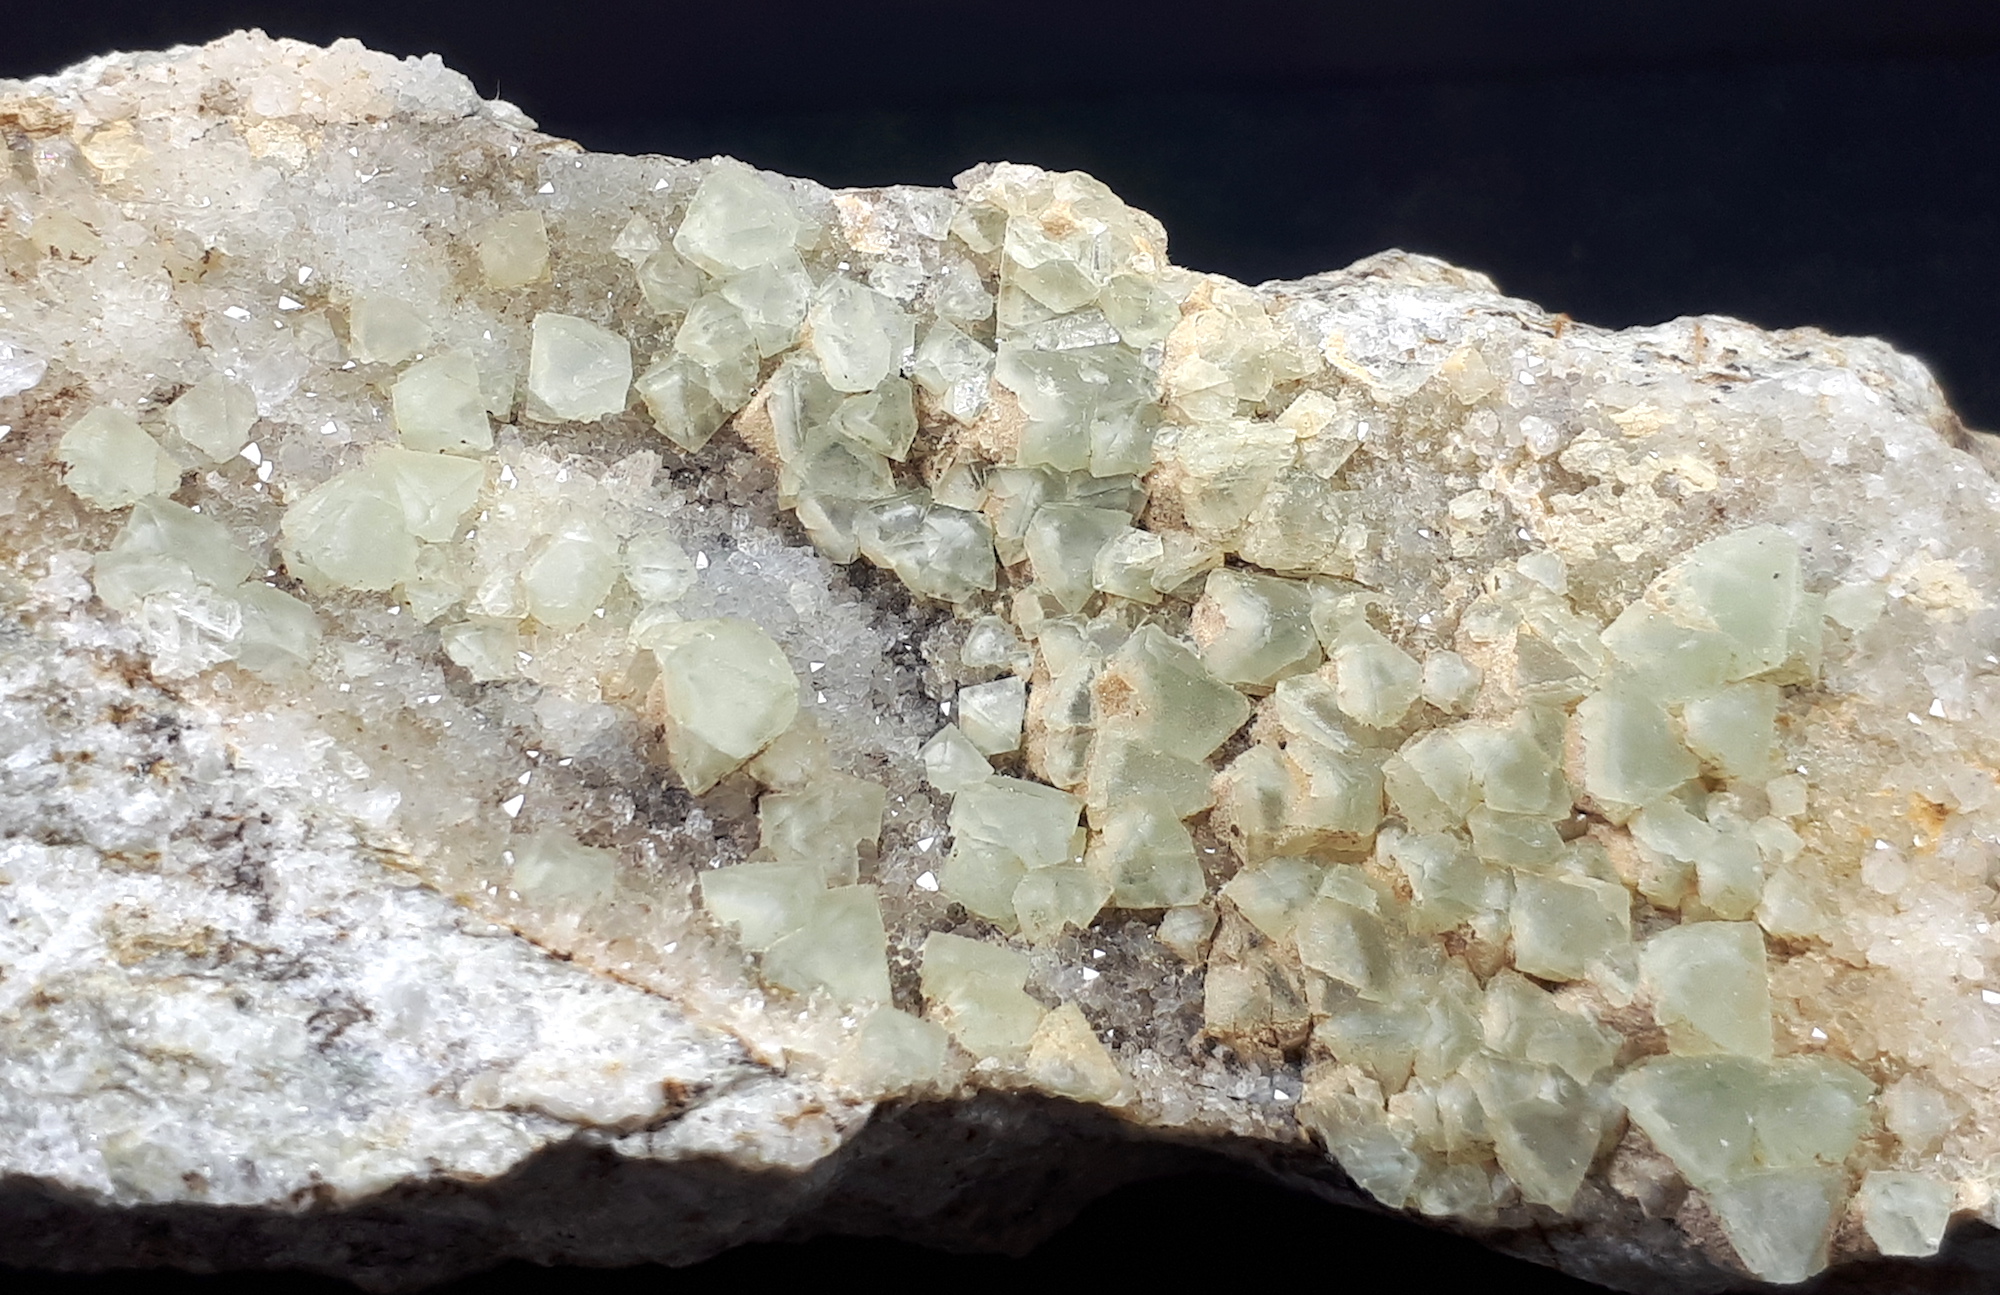 minerali alpini, particolare del campione di Fluorite con Quarzo - dimensioni campione 10x4x3 cm